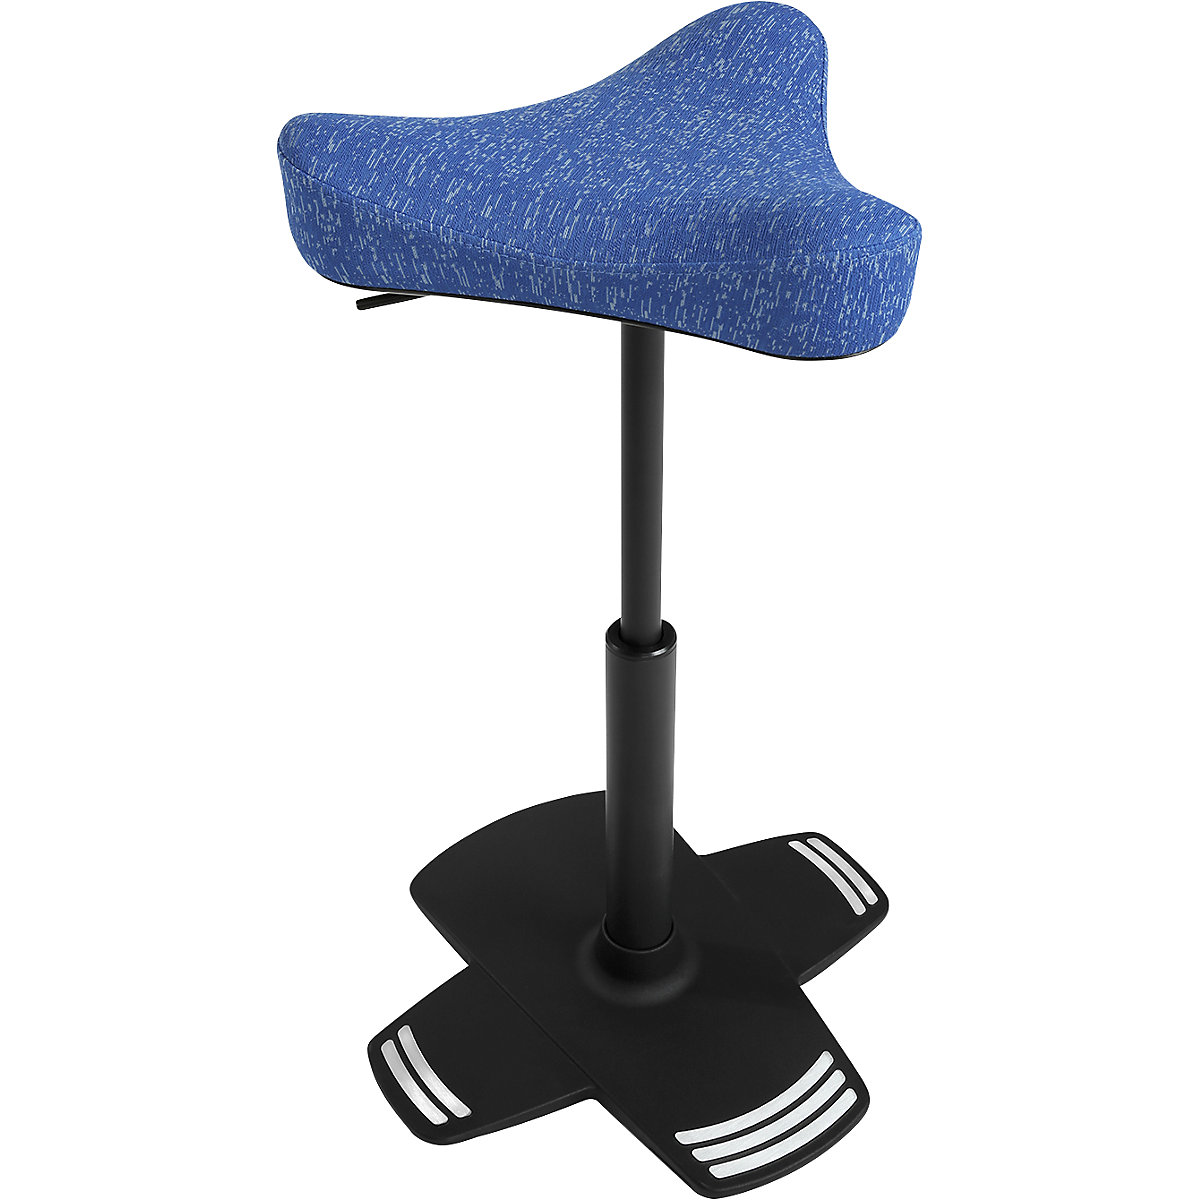 Apoio de pé SITNESS FALCON – Topstar, com assento ergonómico em forma de selim, forro azul-5